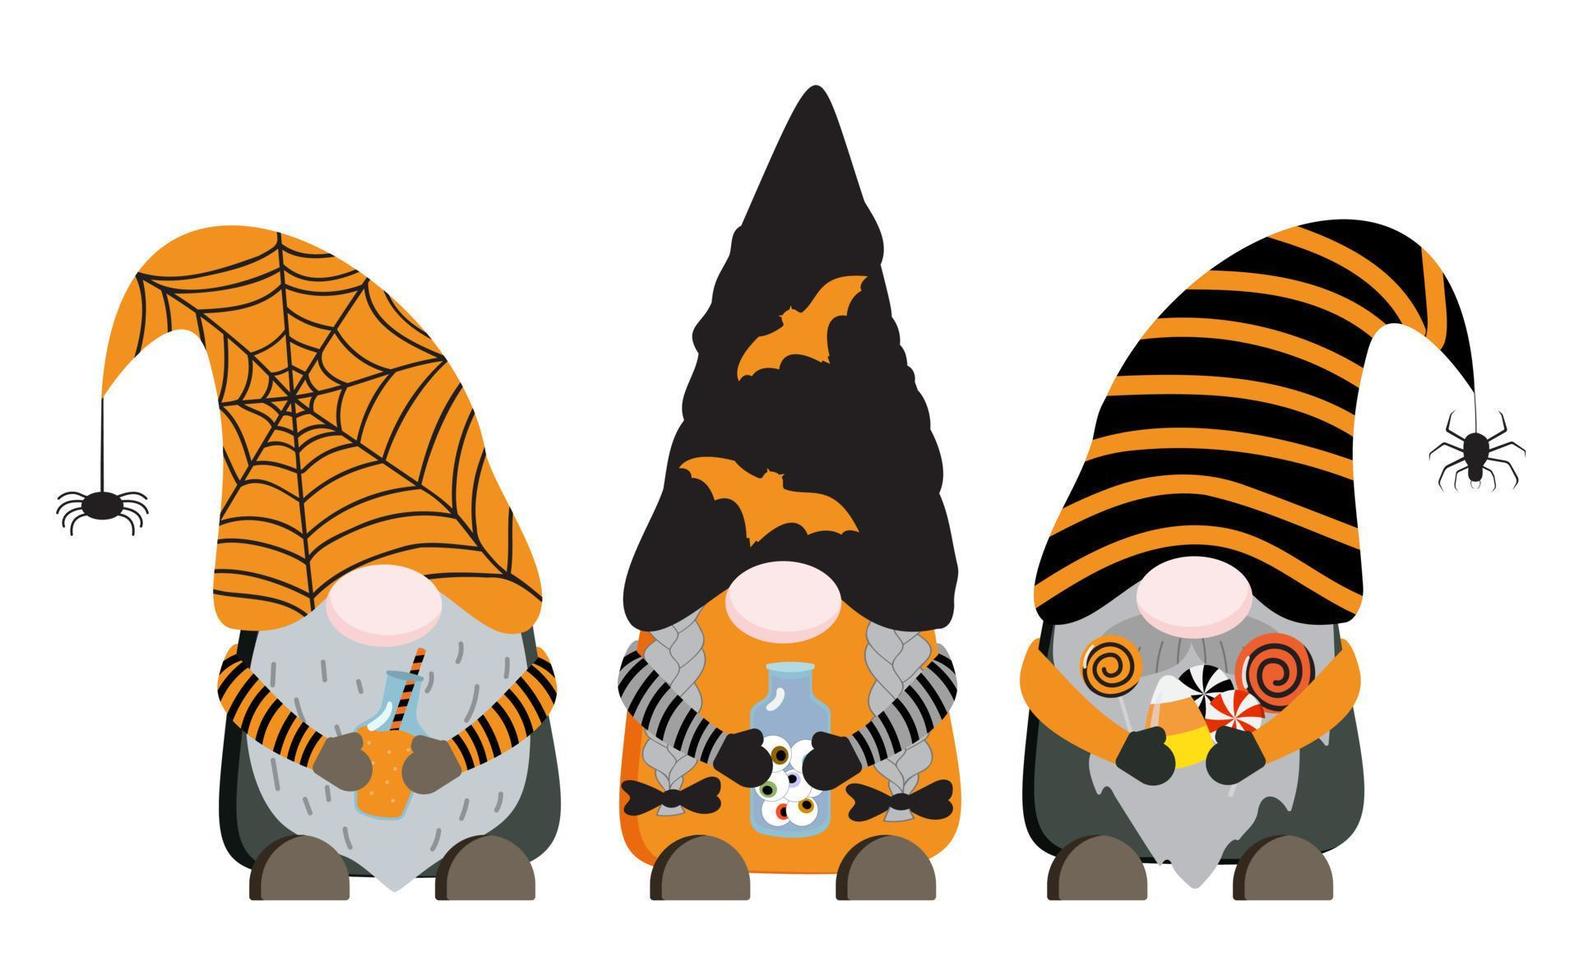 dibujos animados de gnomos vectoriales de halloween en colores naranja y negro con poción, botella con ojos, dulces. aislado sobre fondo blanco. vector